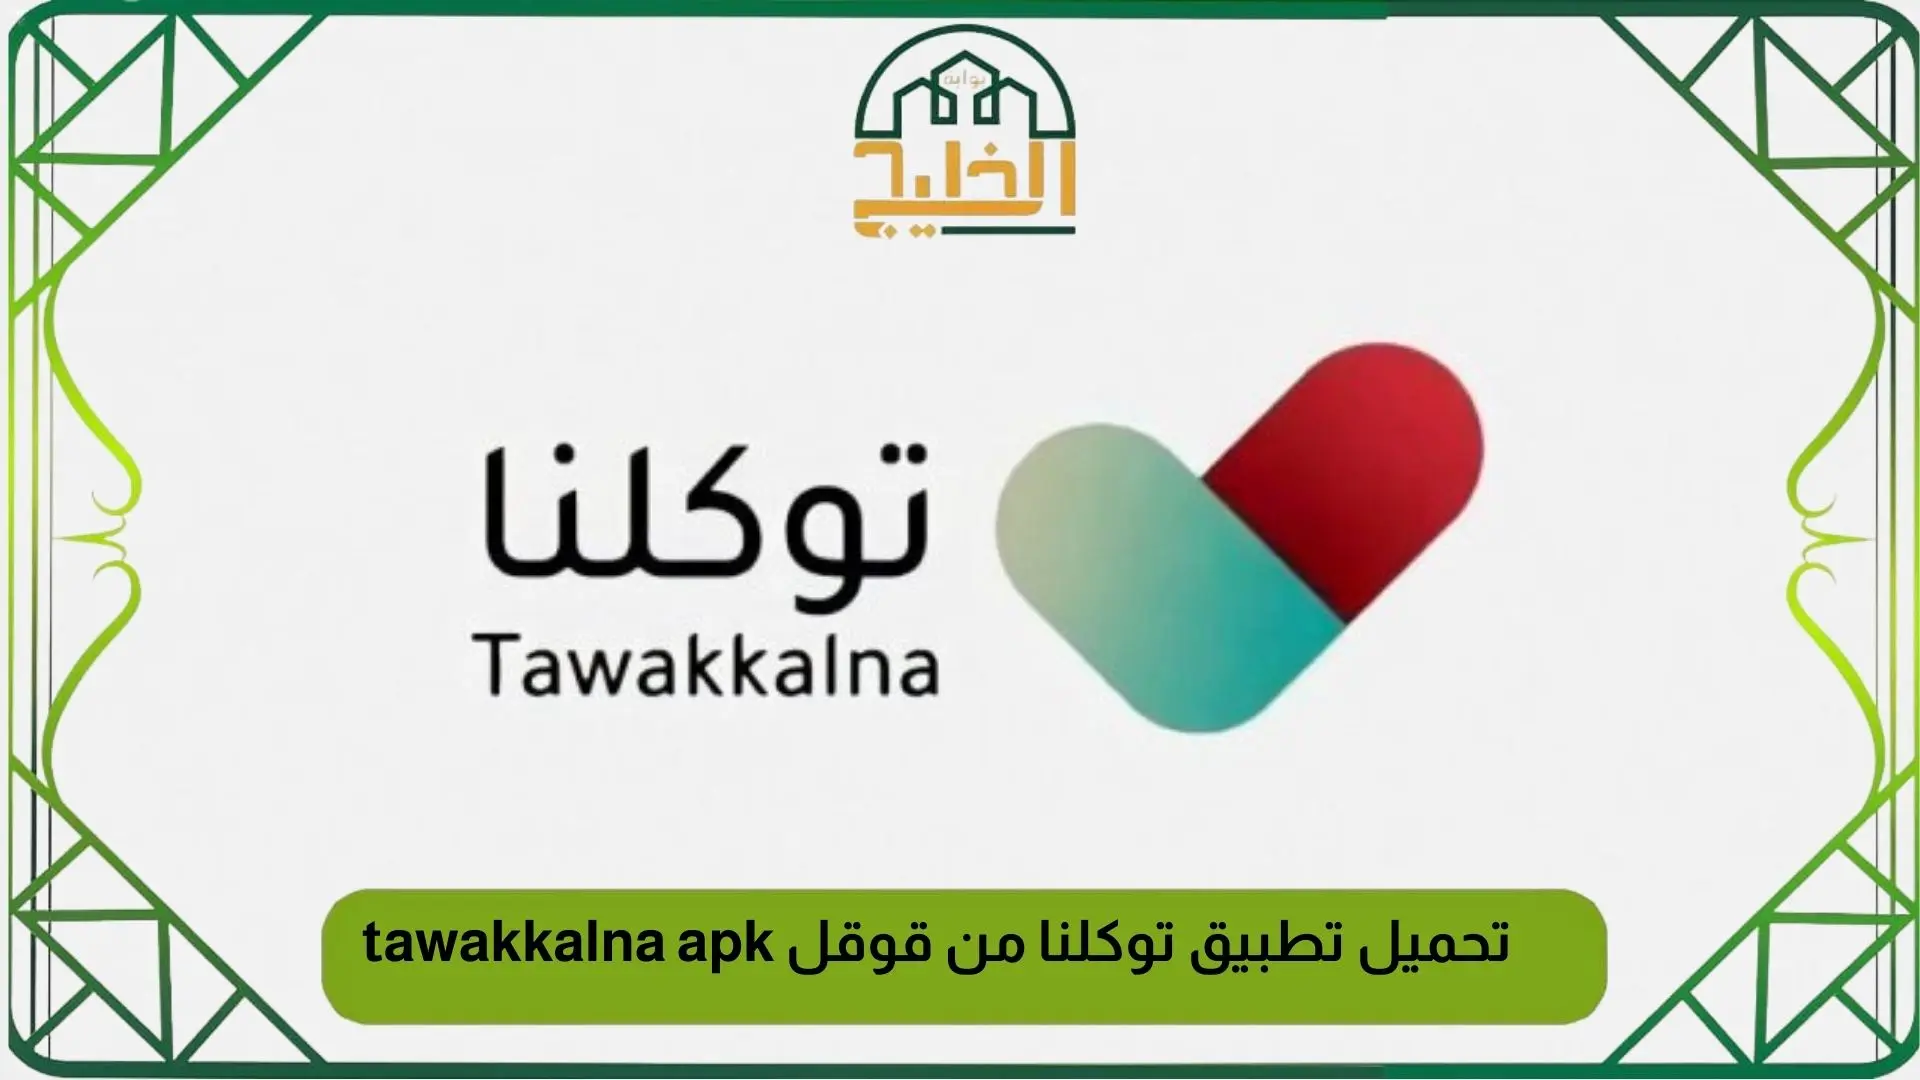 تحميل تطبيق توكلنا من قوقل tawakkalna apk